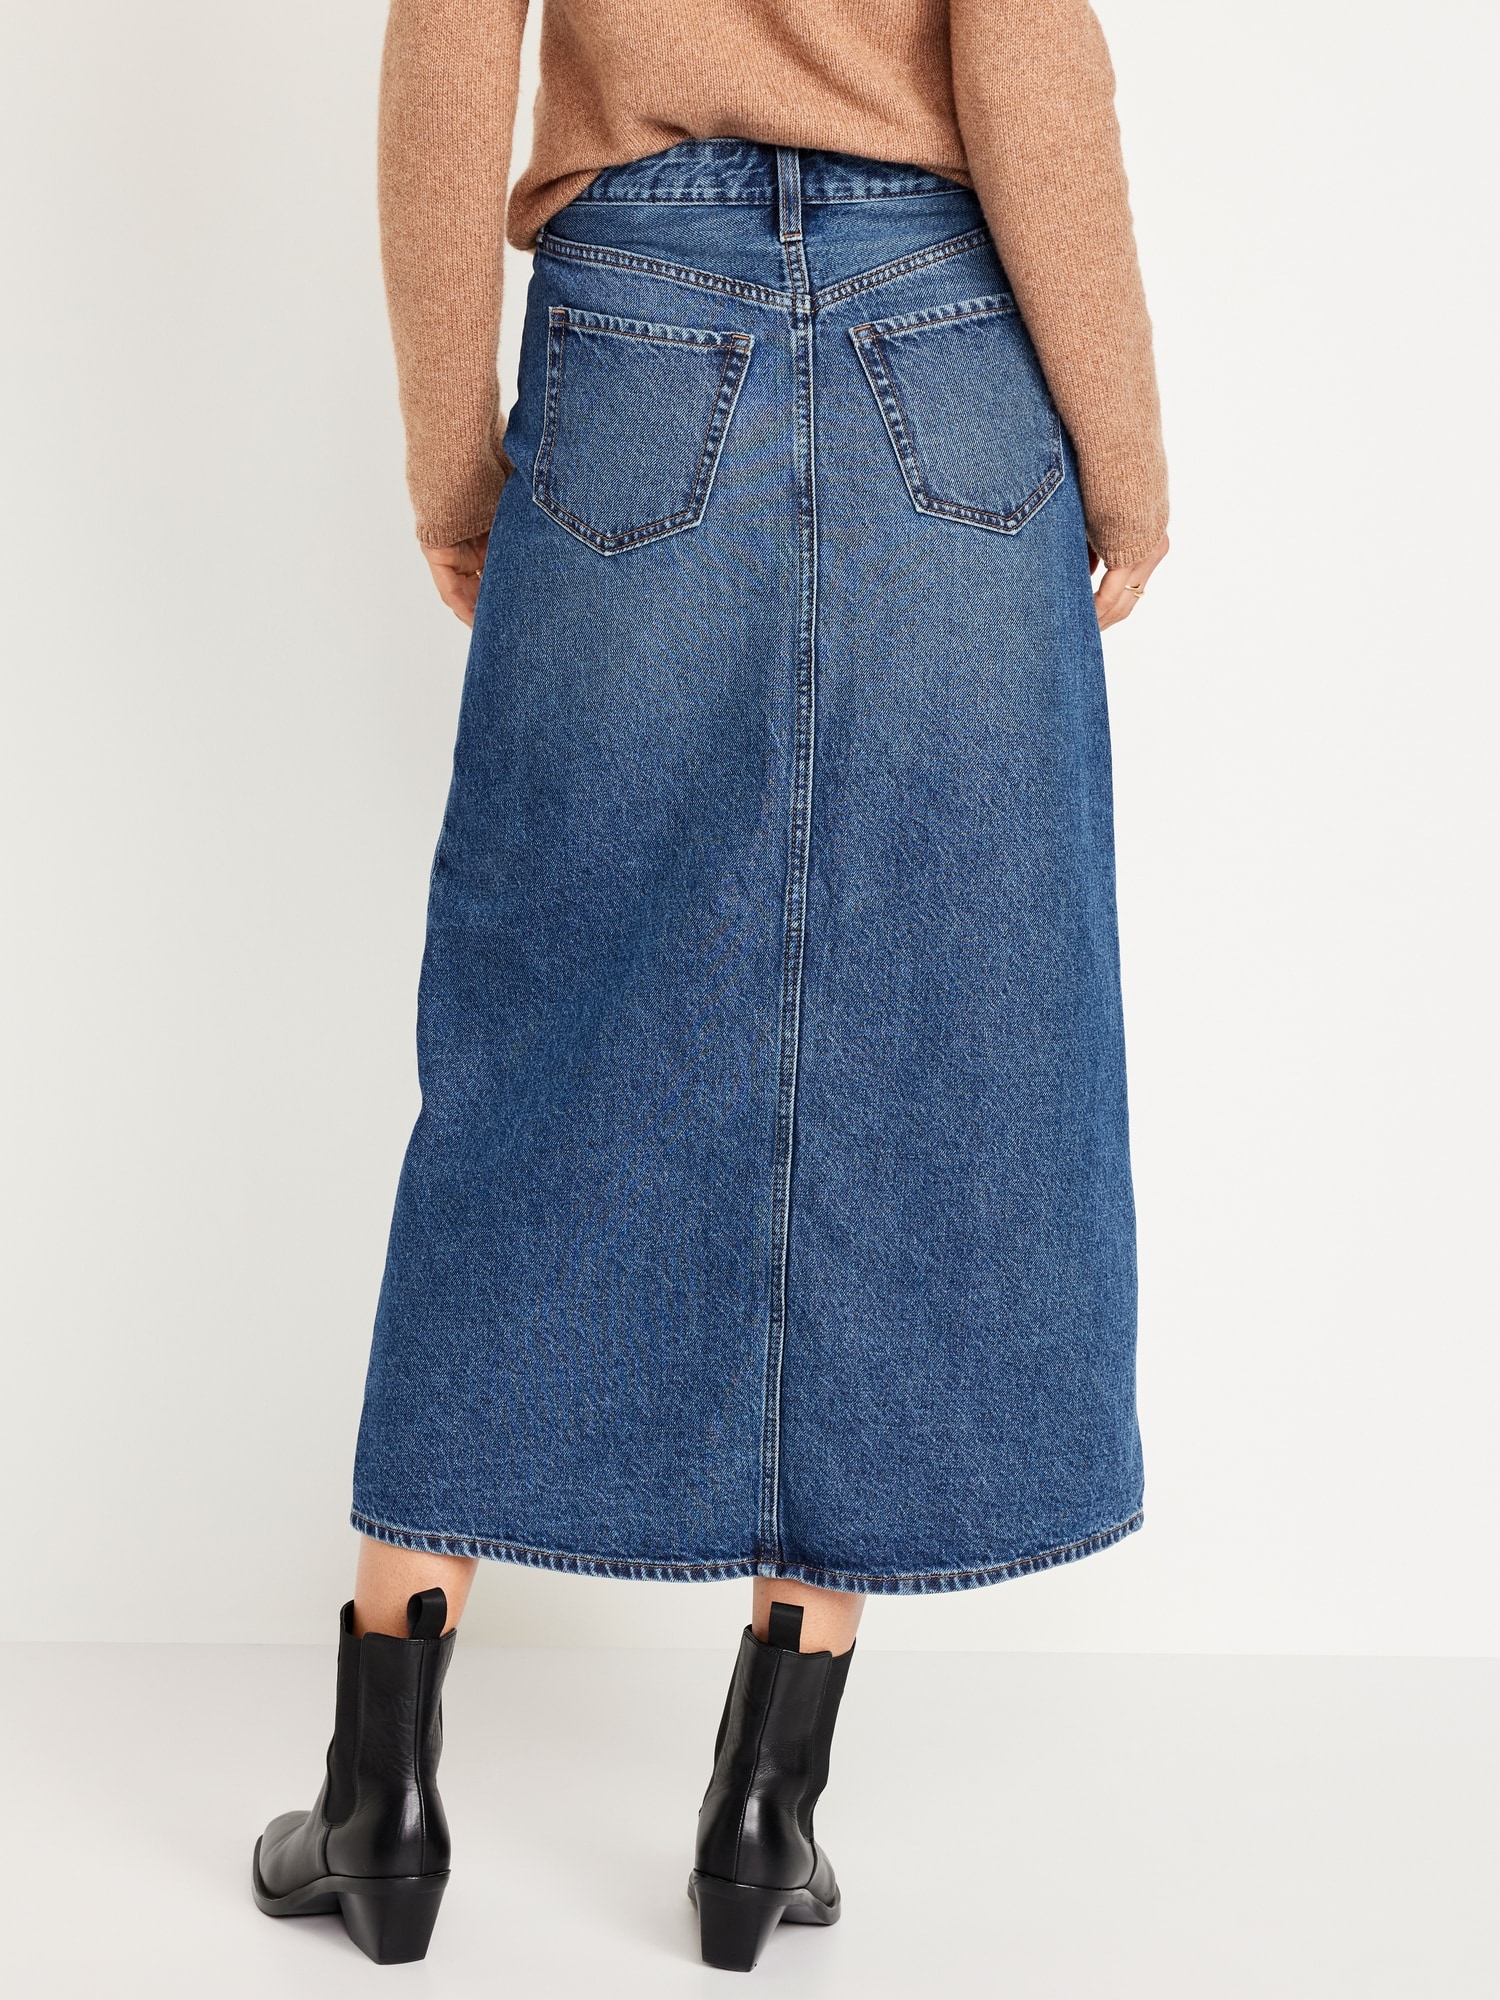 High-Waisted Jean Midi Skirt | Old Navy